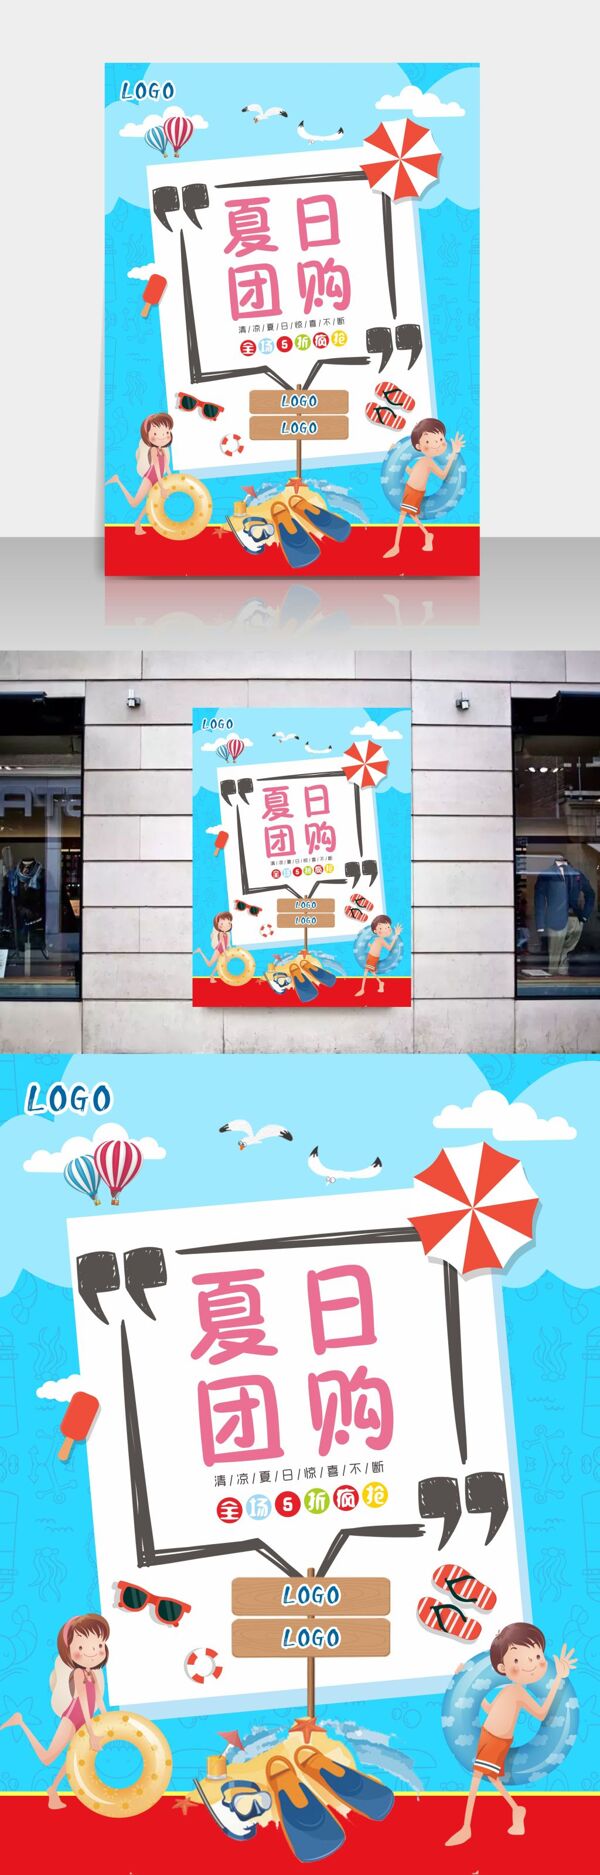 清新夏日旅行团购促销宣传海报